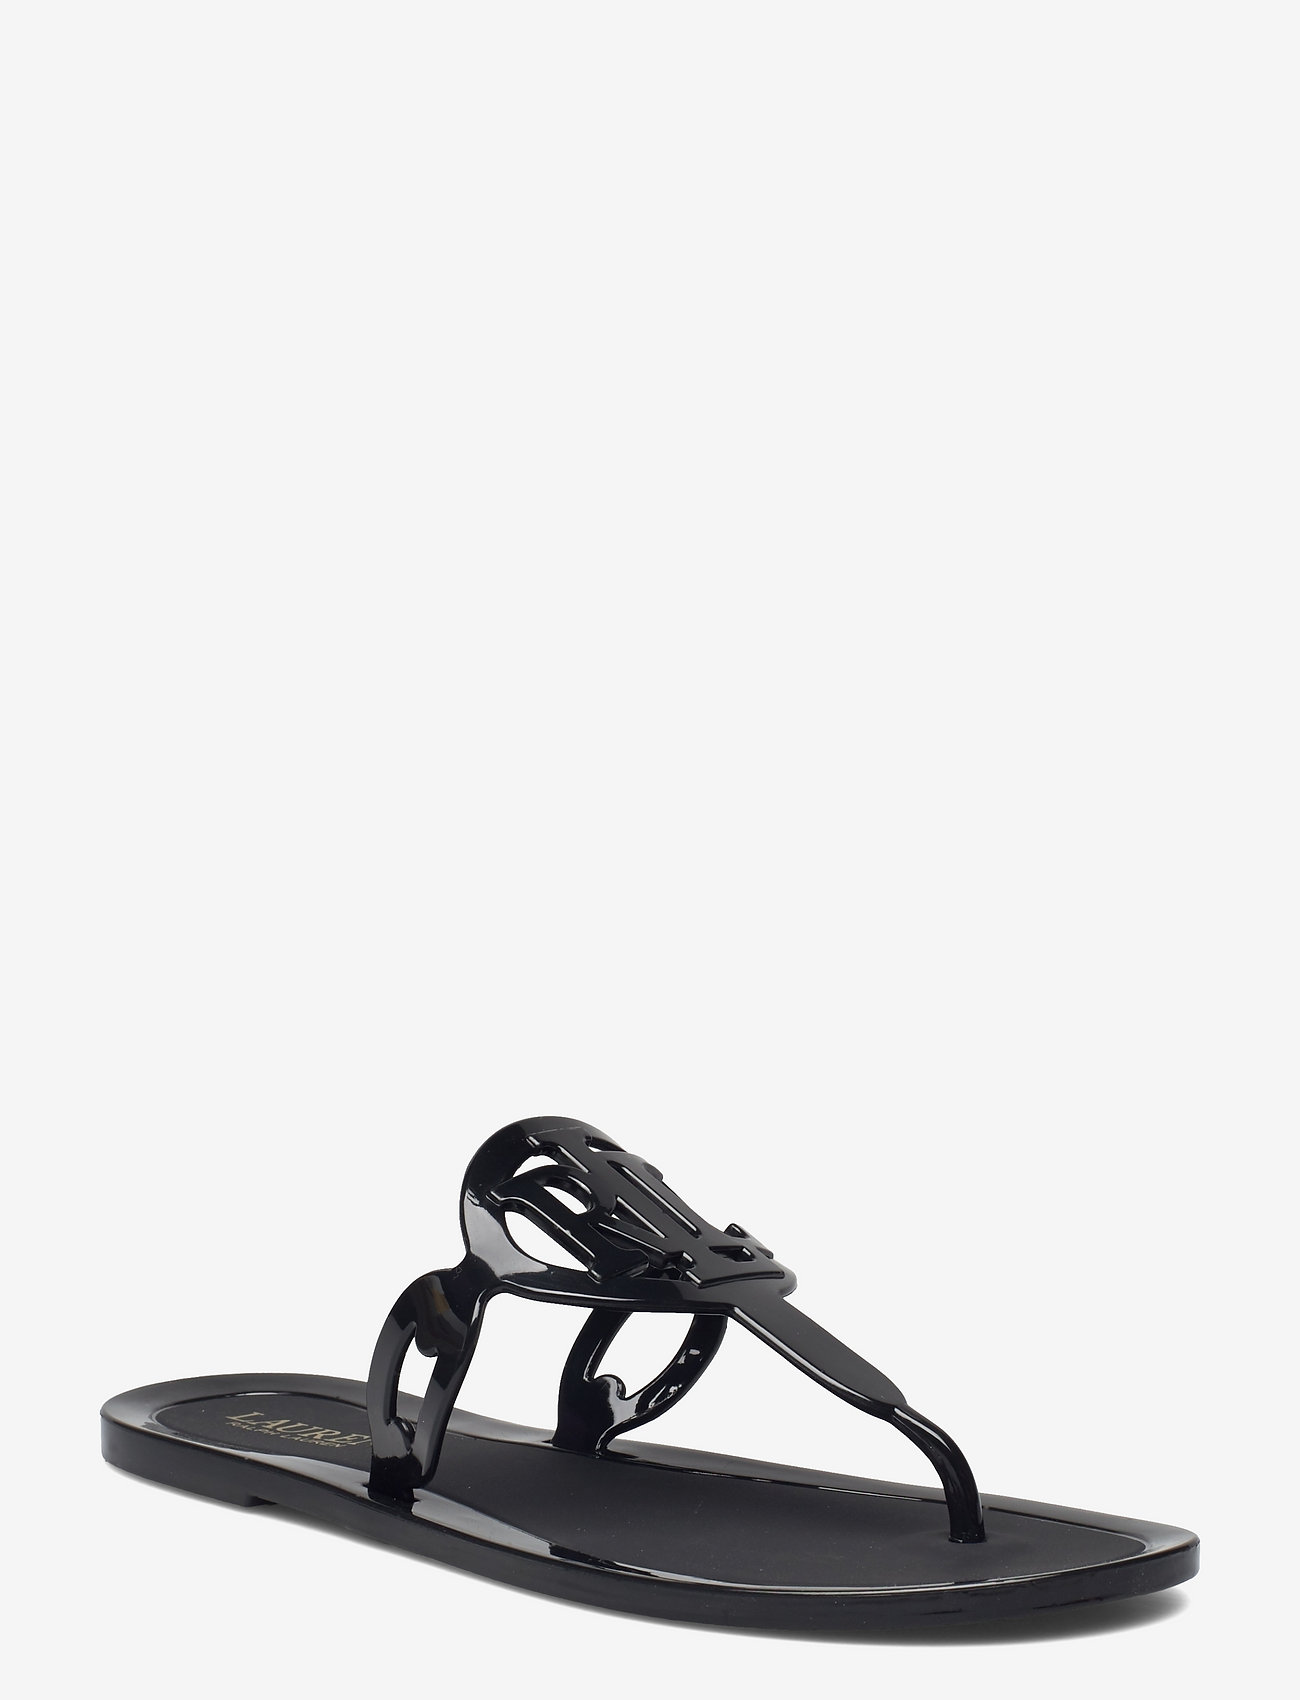 Lauren Ralph Lauren Audrie Jelly Sandal - Flat sandals | Boozt.com